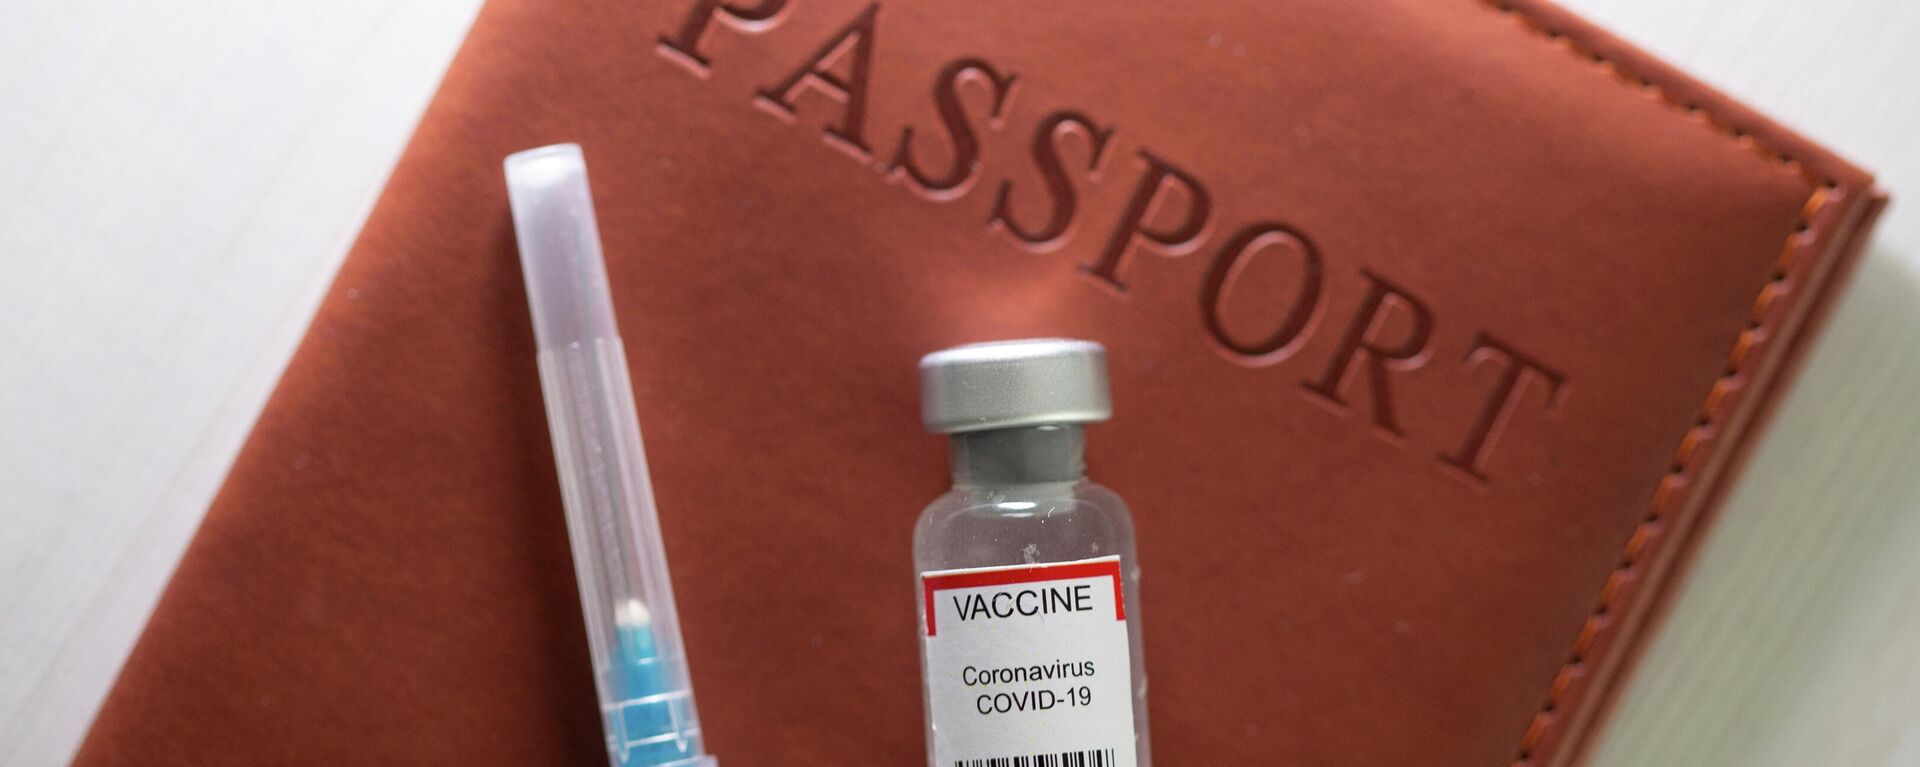 Pasaporte de vacunación contra el coronavirus - Sputnik Mundo, 1920, 28.05.2021